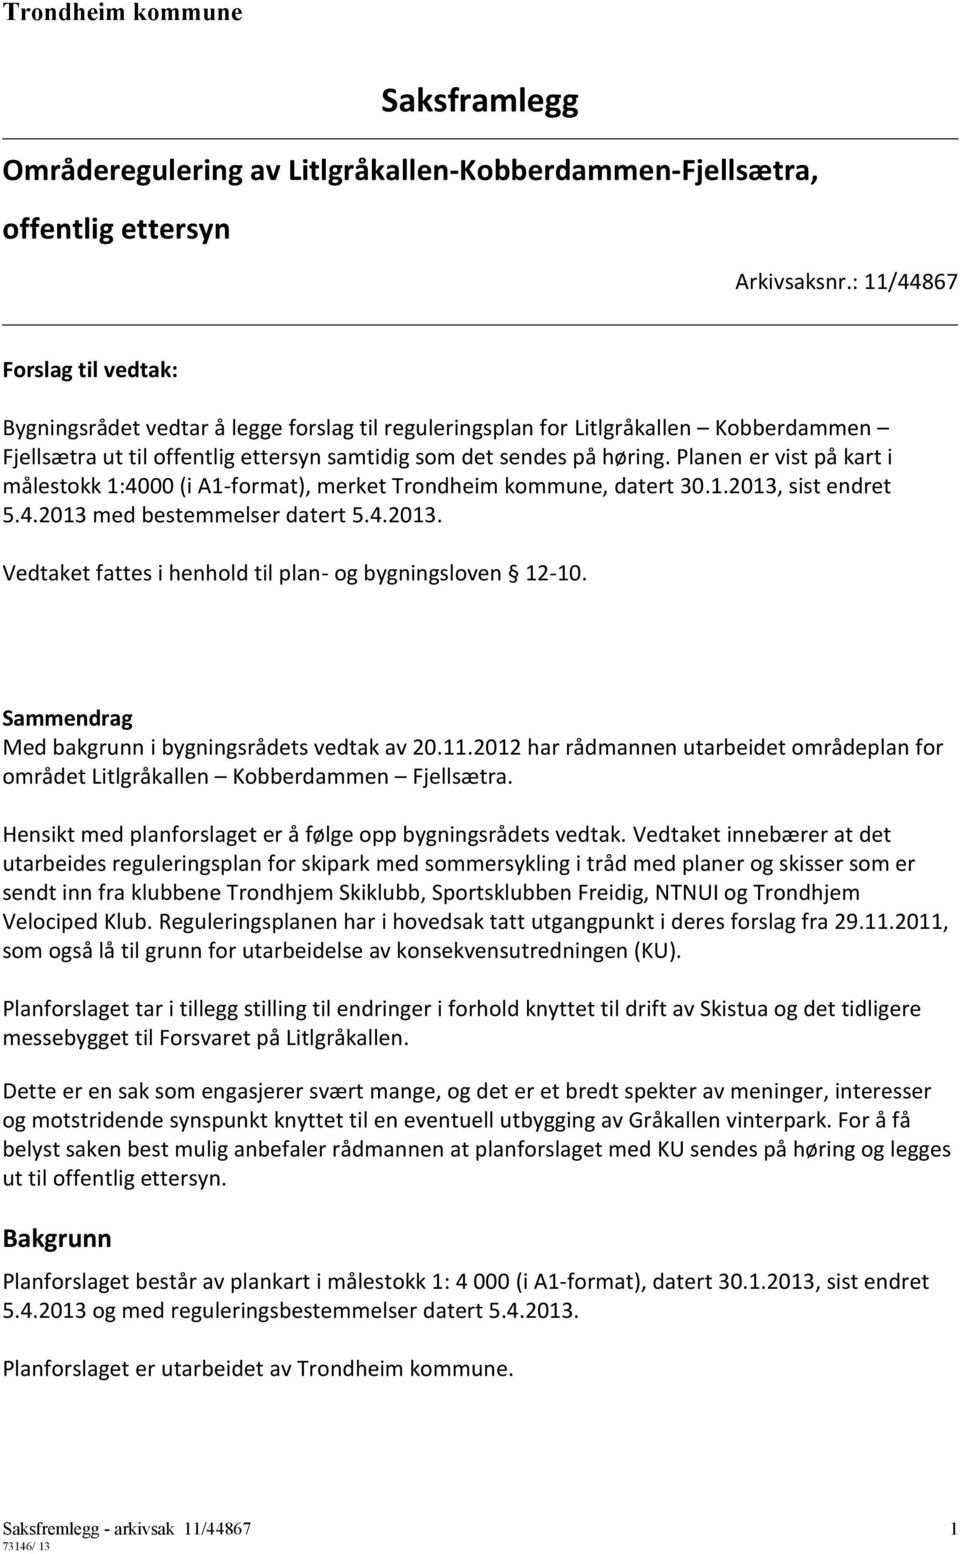 Planen er vist på kart i målestokk 1:4000 (i A1-format), merket Trondheim kommune, datert 30.1.2013, sist endret 5.4.2013 med bestemmelser datert 5.4.2013. Vedtaket fattes i henhold til plan- og bygningsloven 12-10.